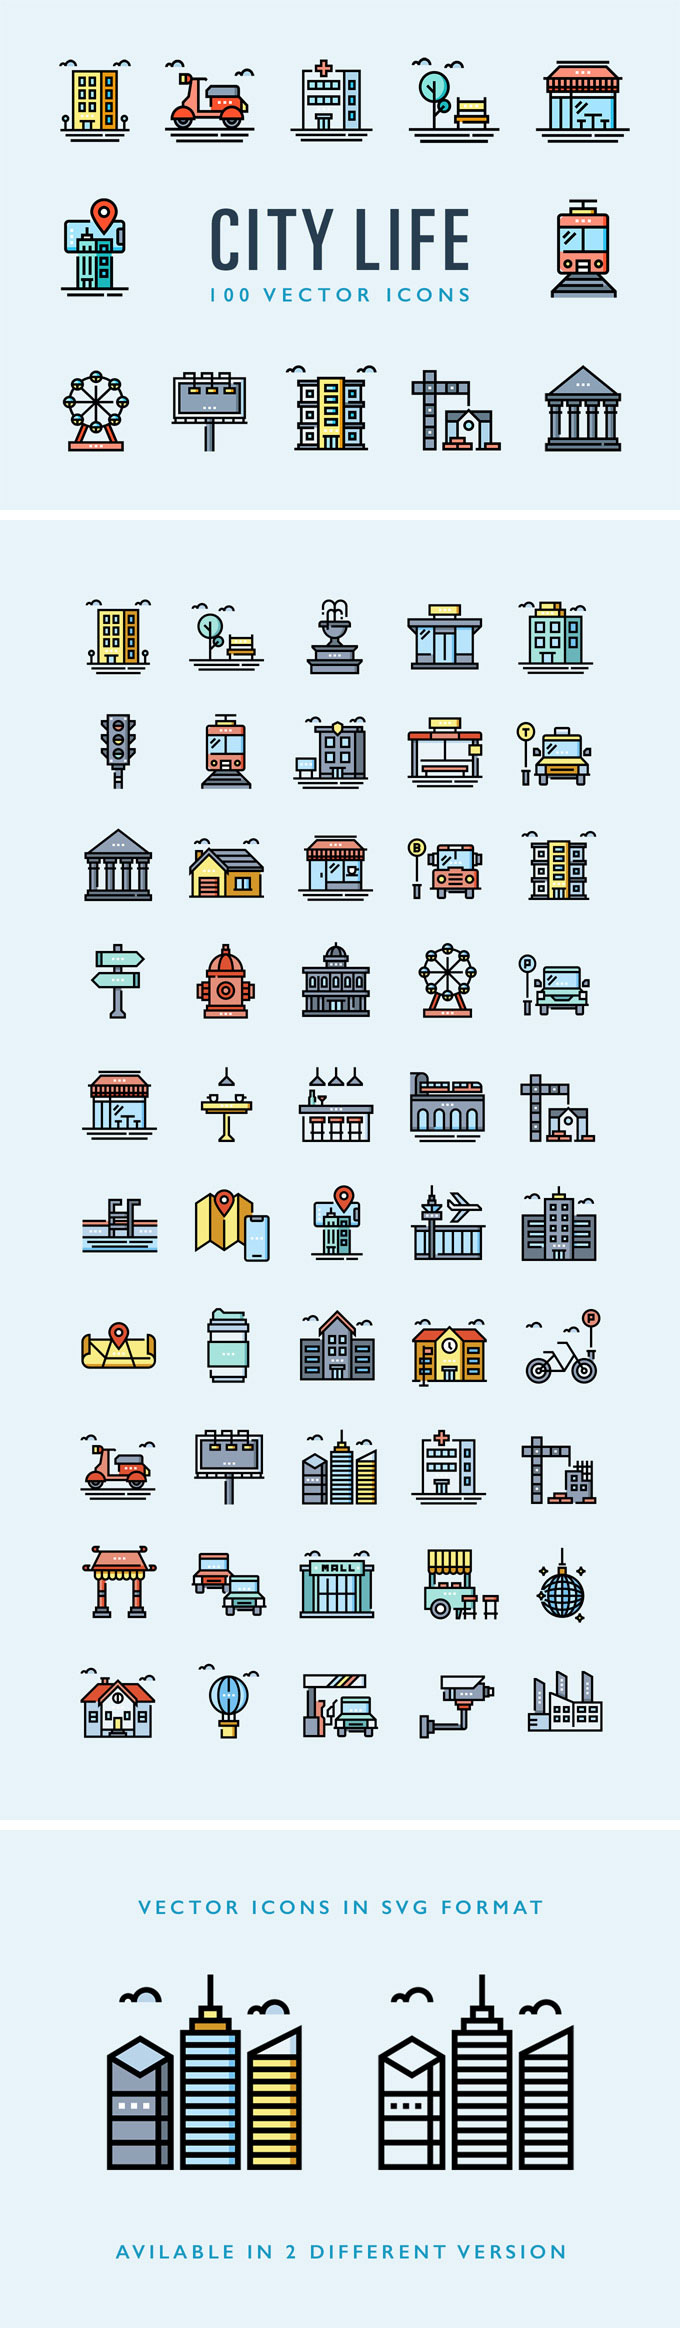 100枚城市生活图标，SVG格式 图标素材 第1张